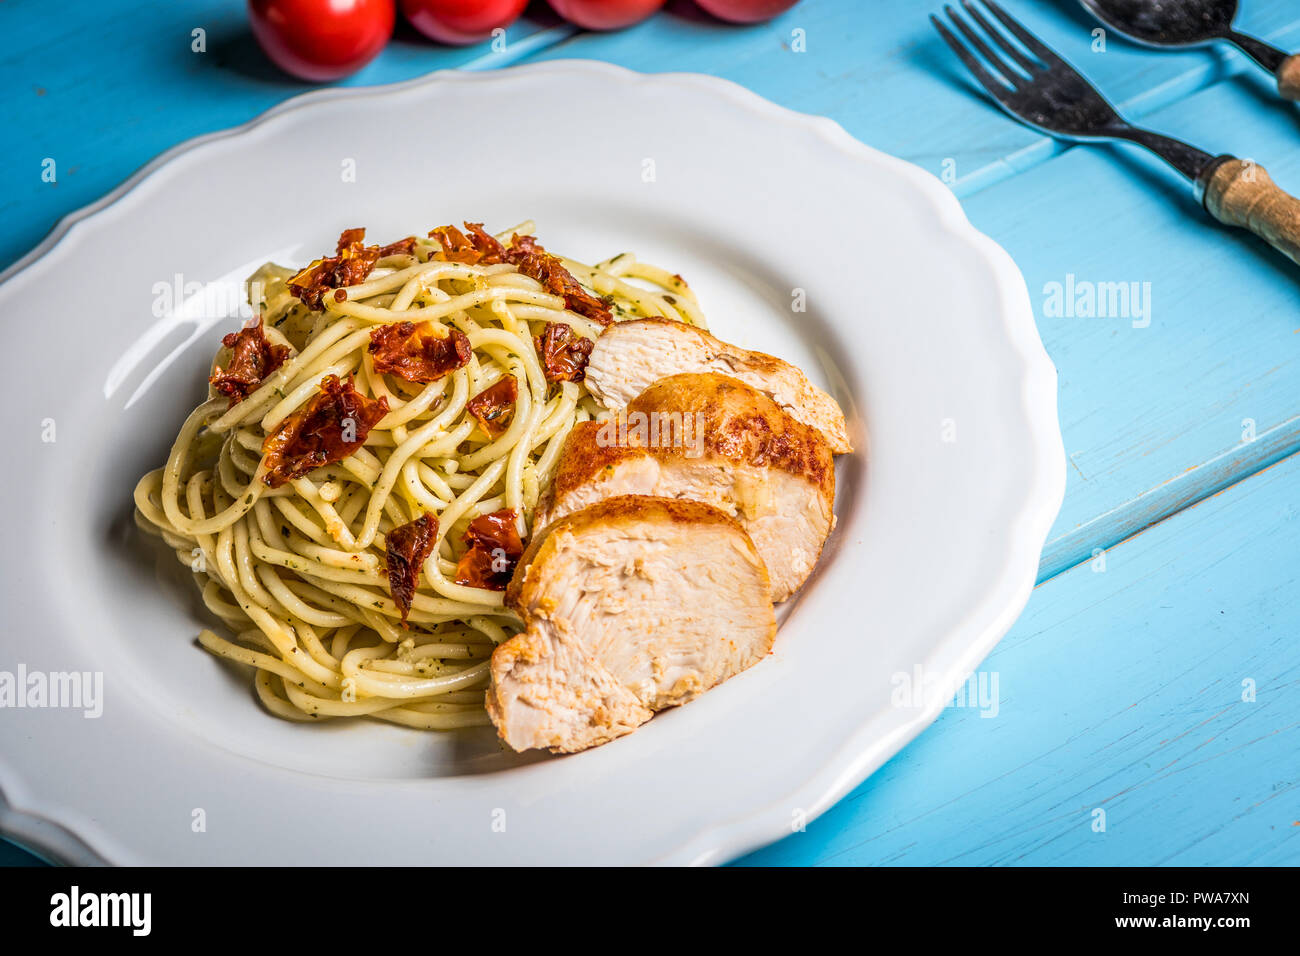 Spaghetti pâtes italiennes avec du poulet, tomates séchées et basilic Pesto sur tableau bleu Banque D'Images